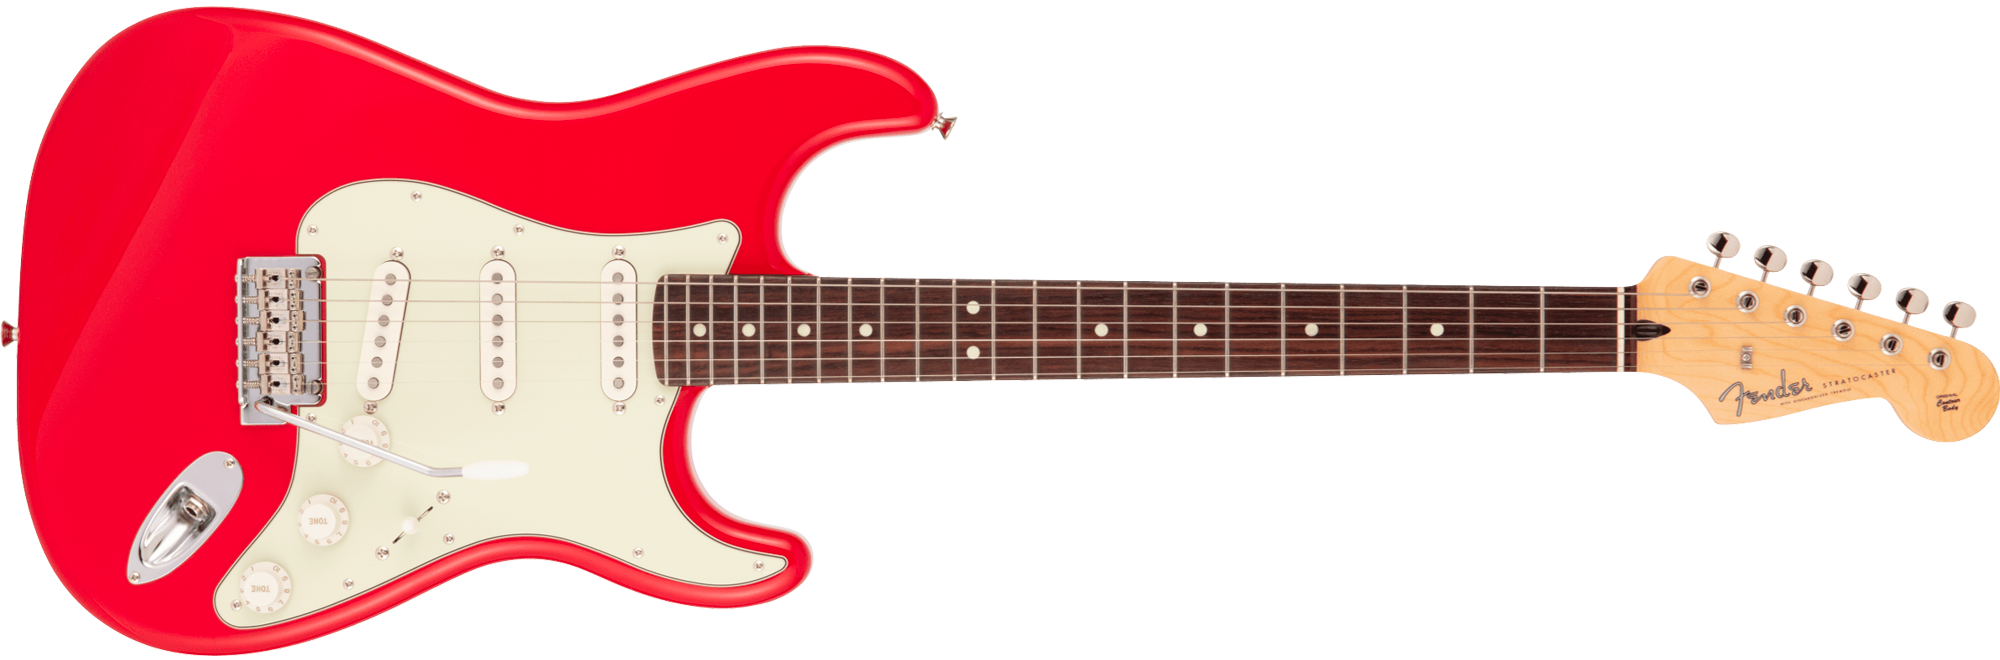 最新作の II Hybrid MIJ Fender ストラト ピックアップ - ギター 